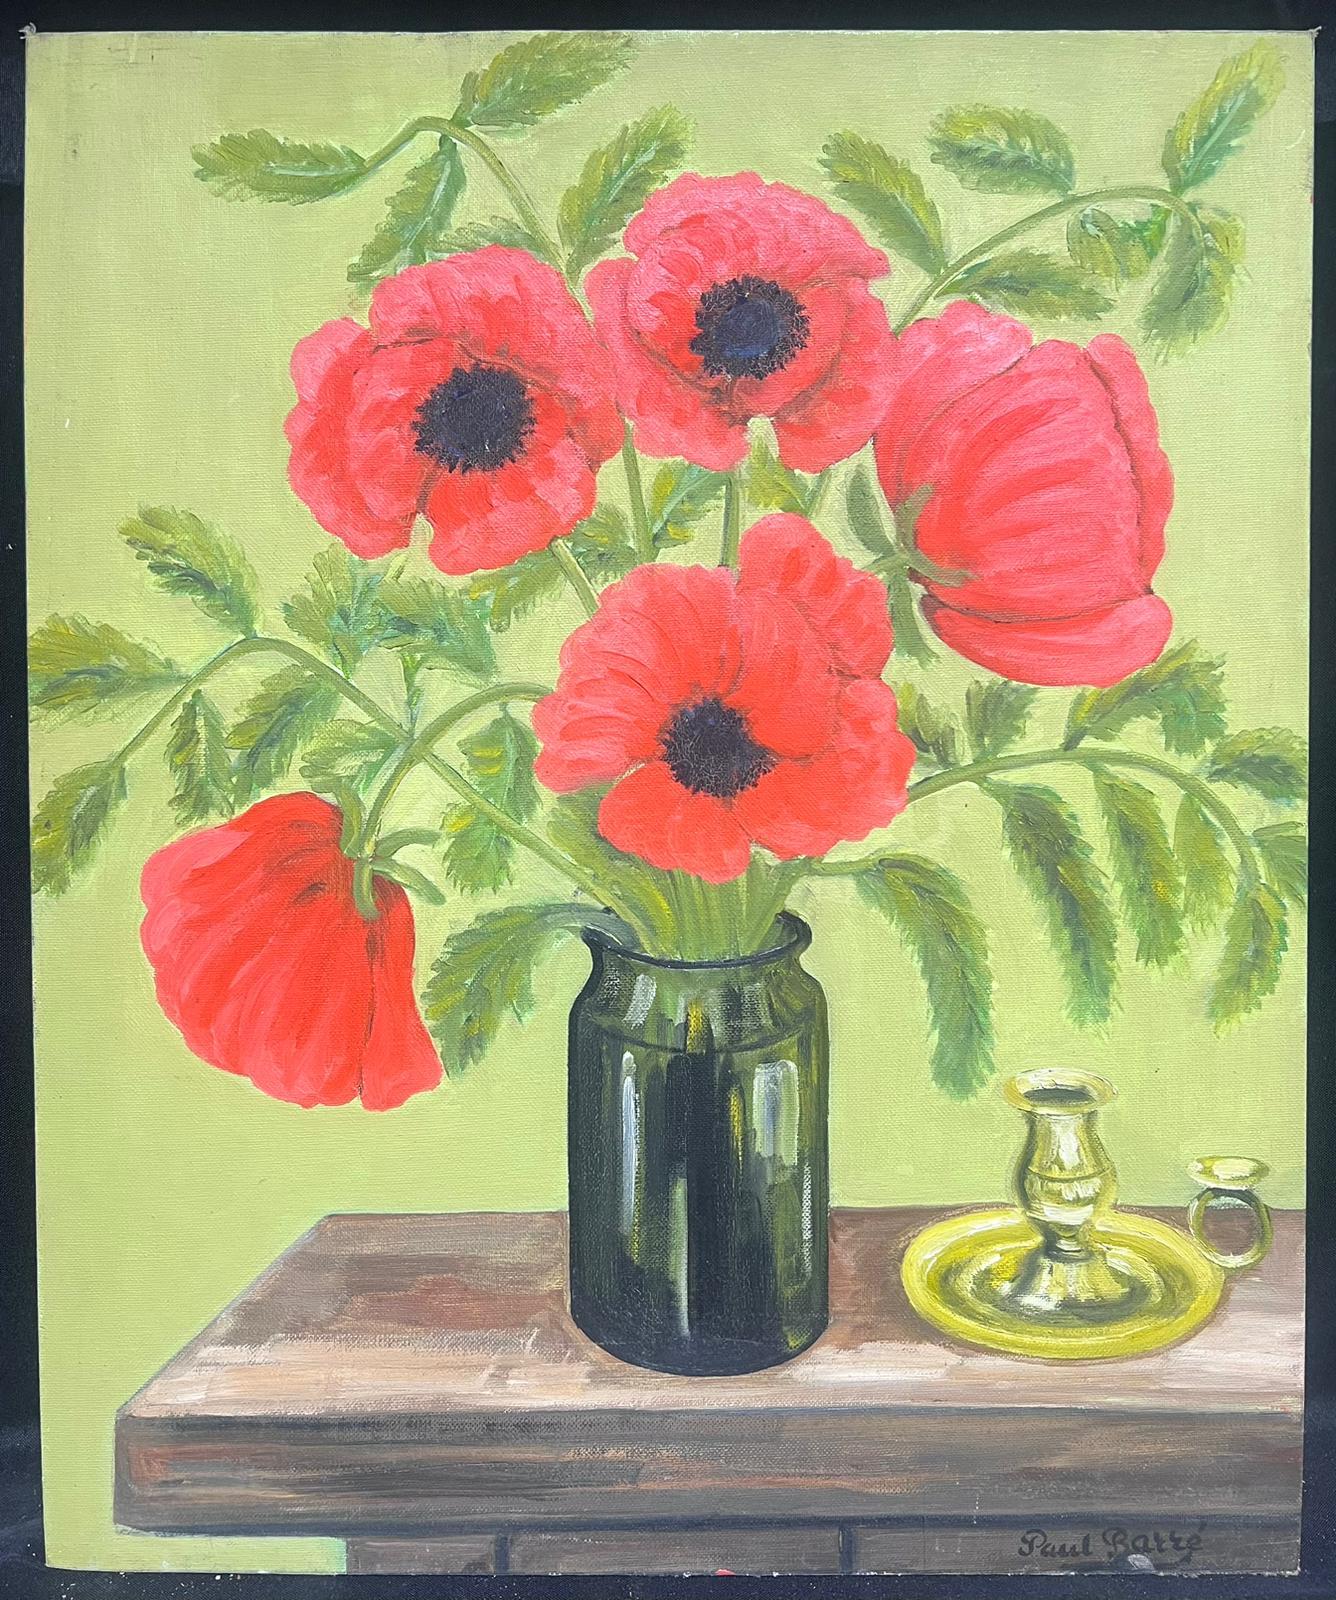 Peinture impressionniste française des années 1930 Pivoines rouges dans un vase en verre Intérieur vert - Painting de Louise Alix